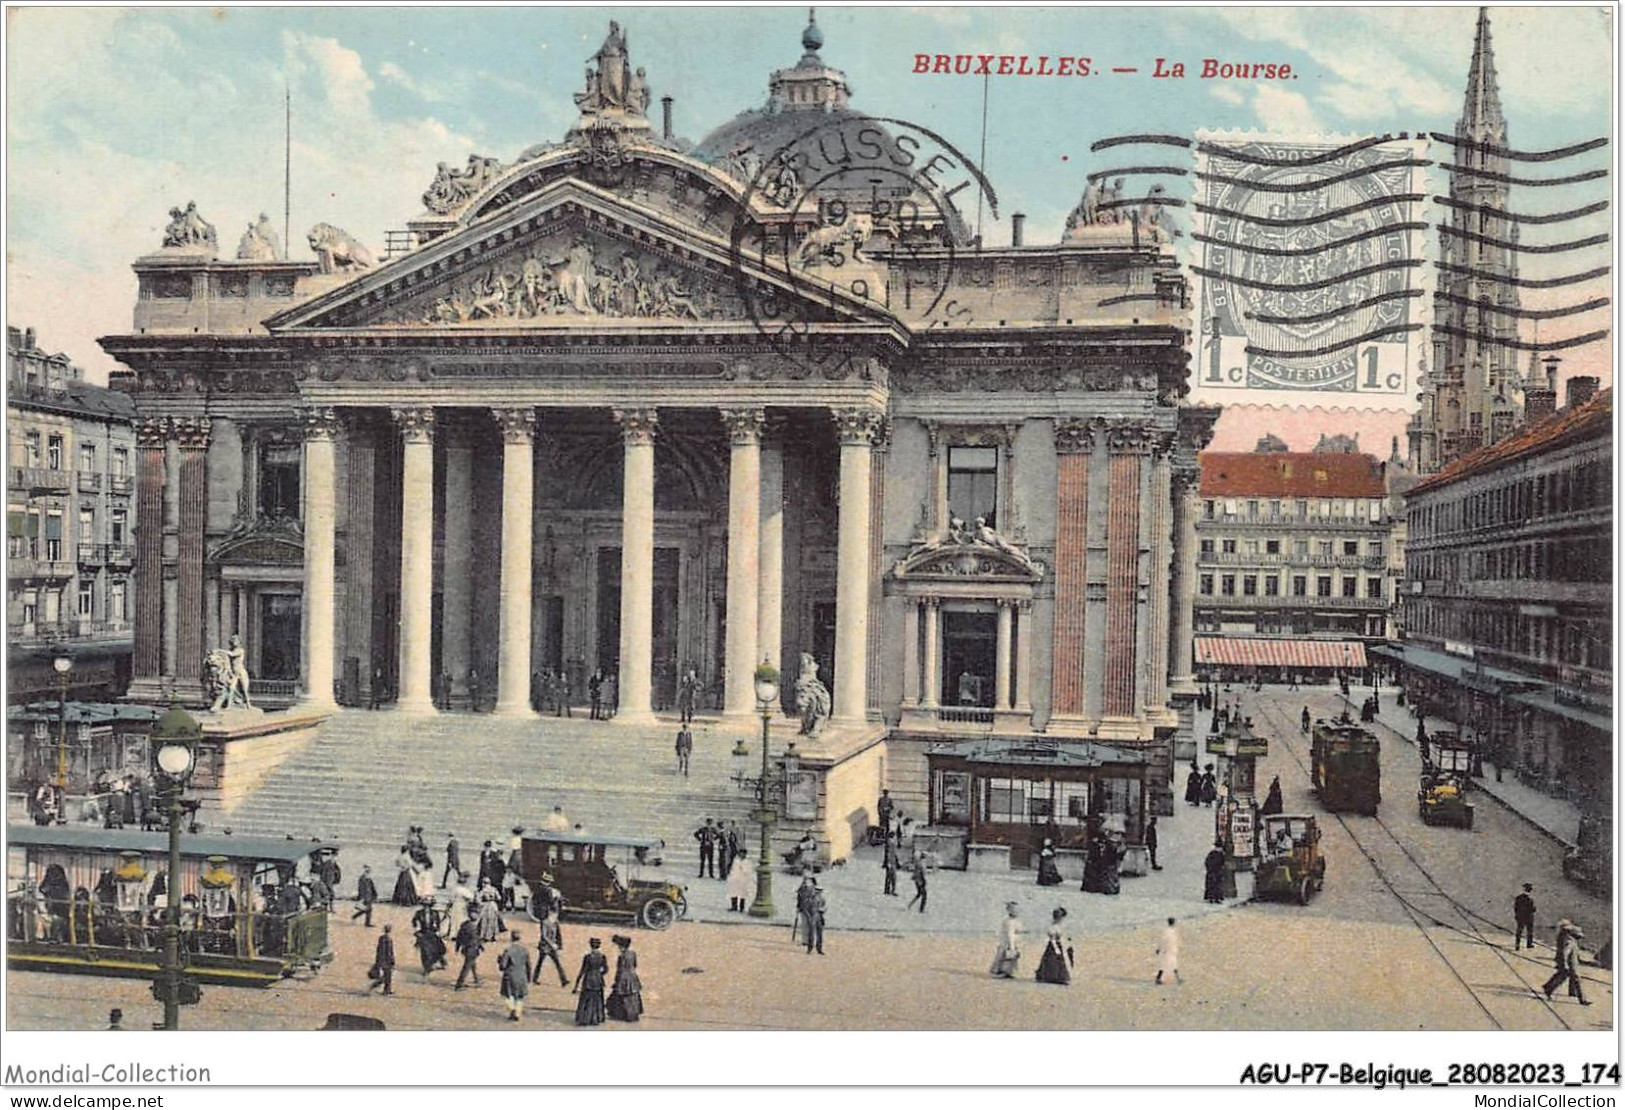 AGUP7-0616-BELGIQUE - BRUXELLES - La Bourse - Monuments, édifices